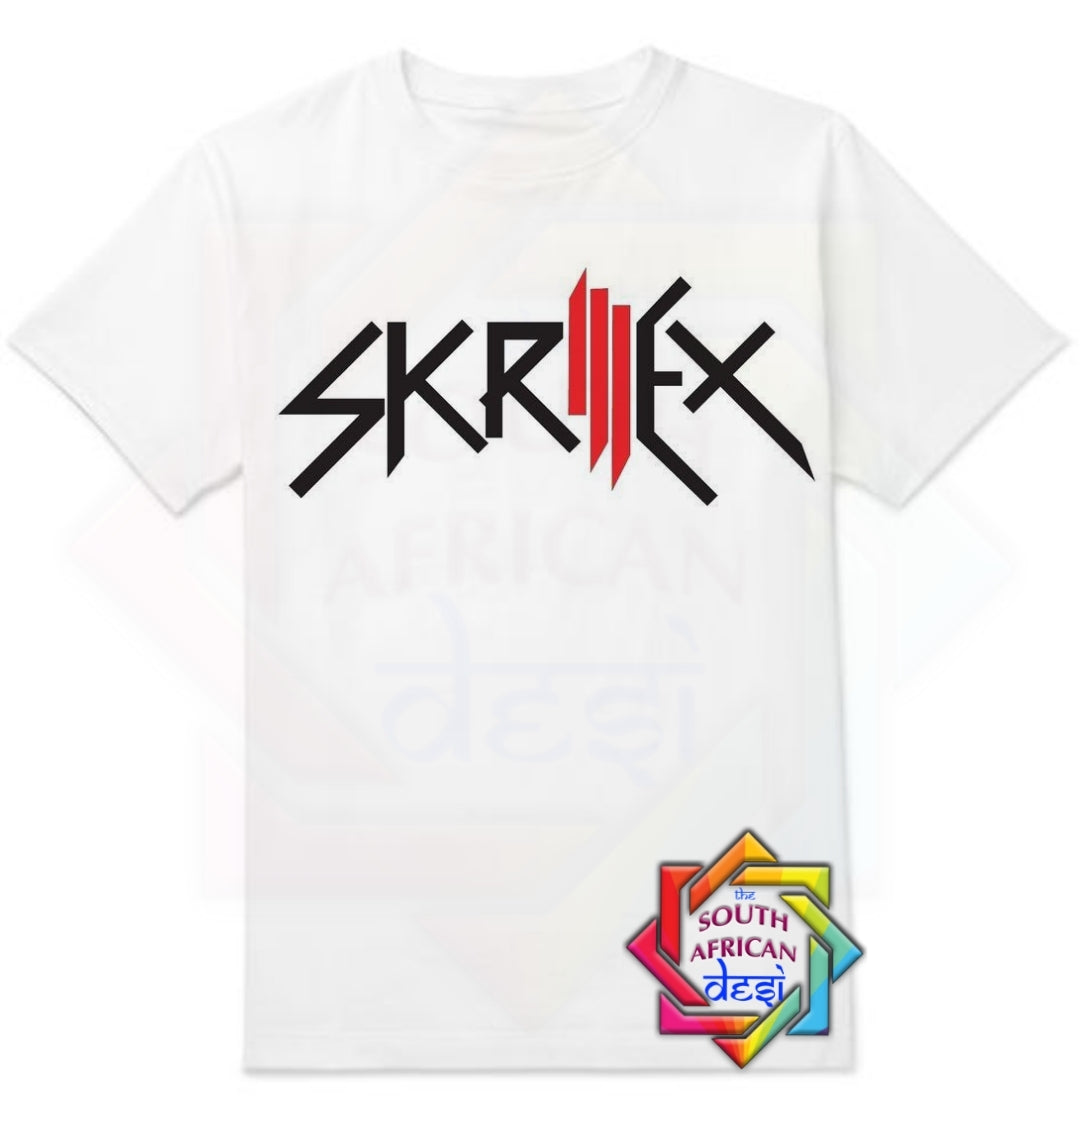 SKRILLEX INSPIRED T-SHIRT